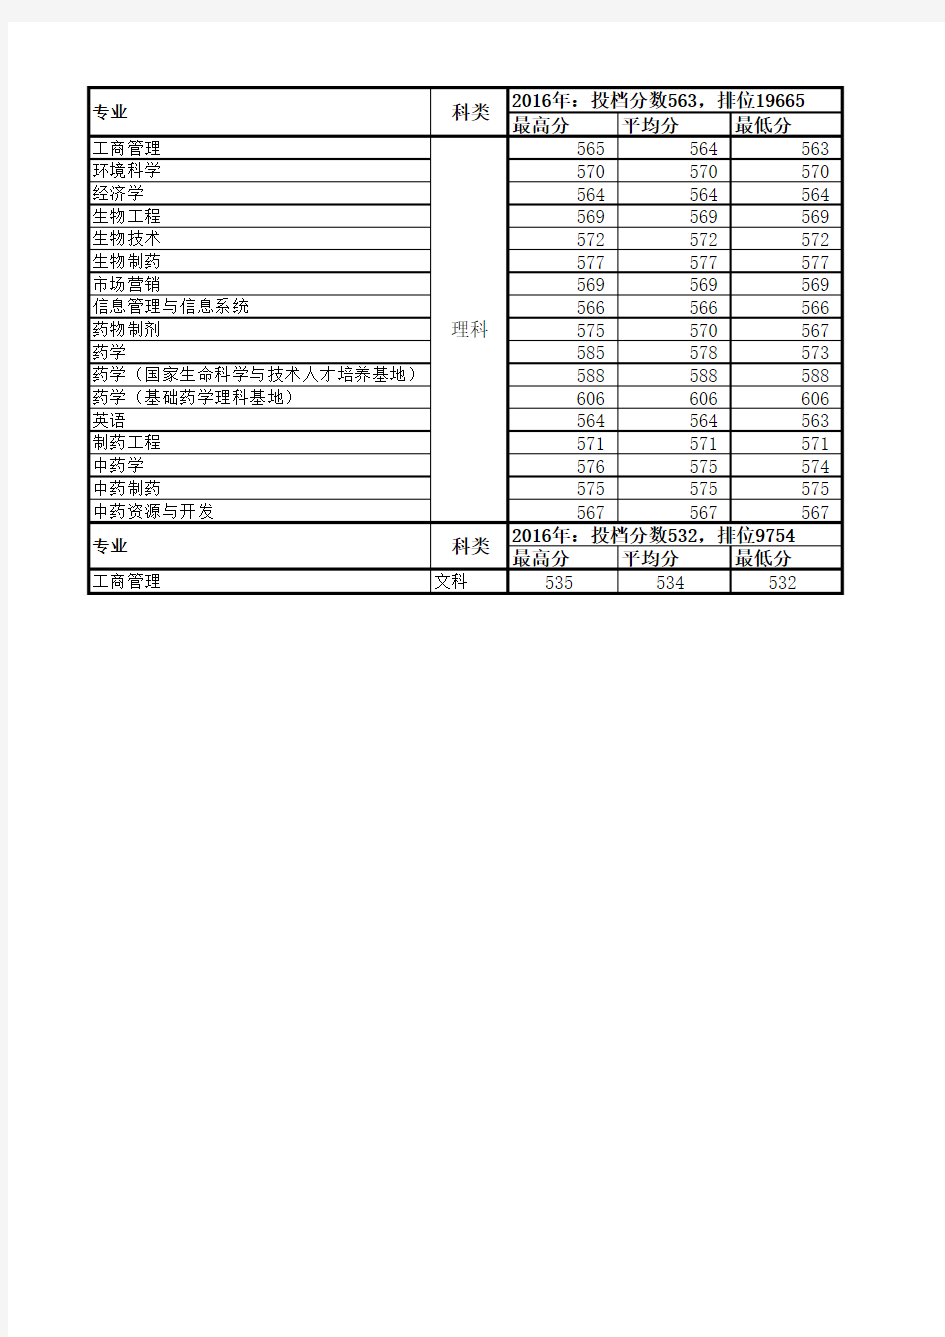 中国药科大学2014-2016年专业录取情况